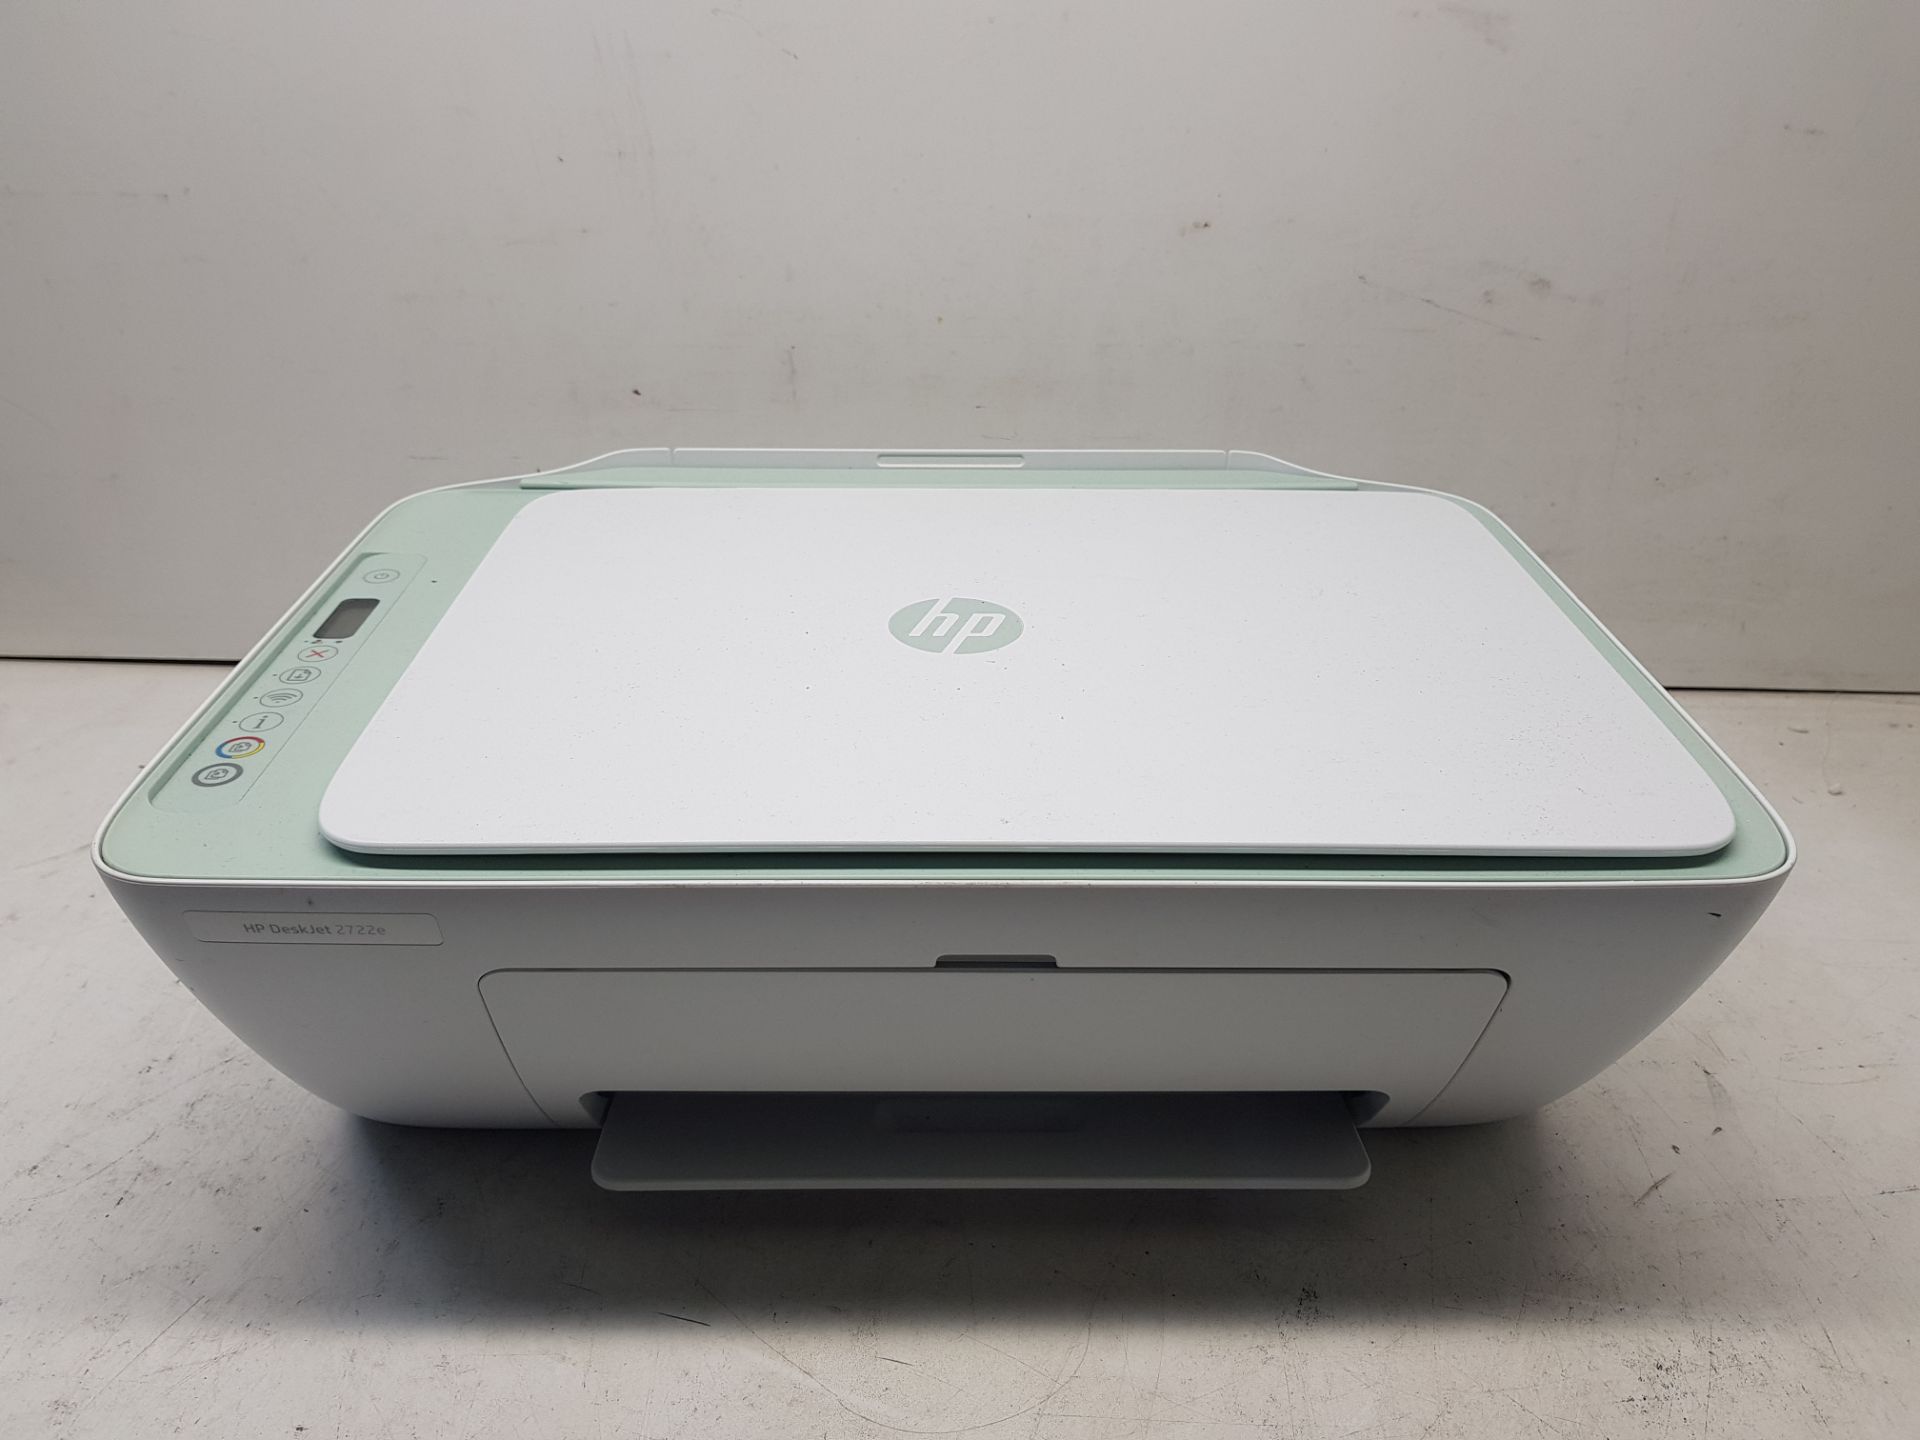 HP DeskJet 2722e All-in-One Printer S/N: CN21KCWNGN